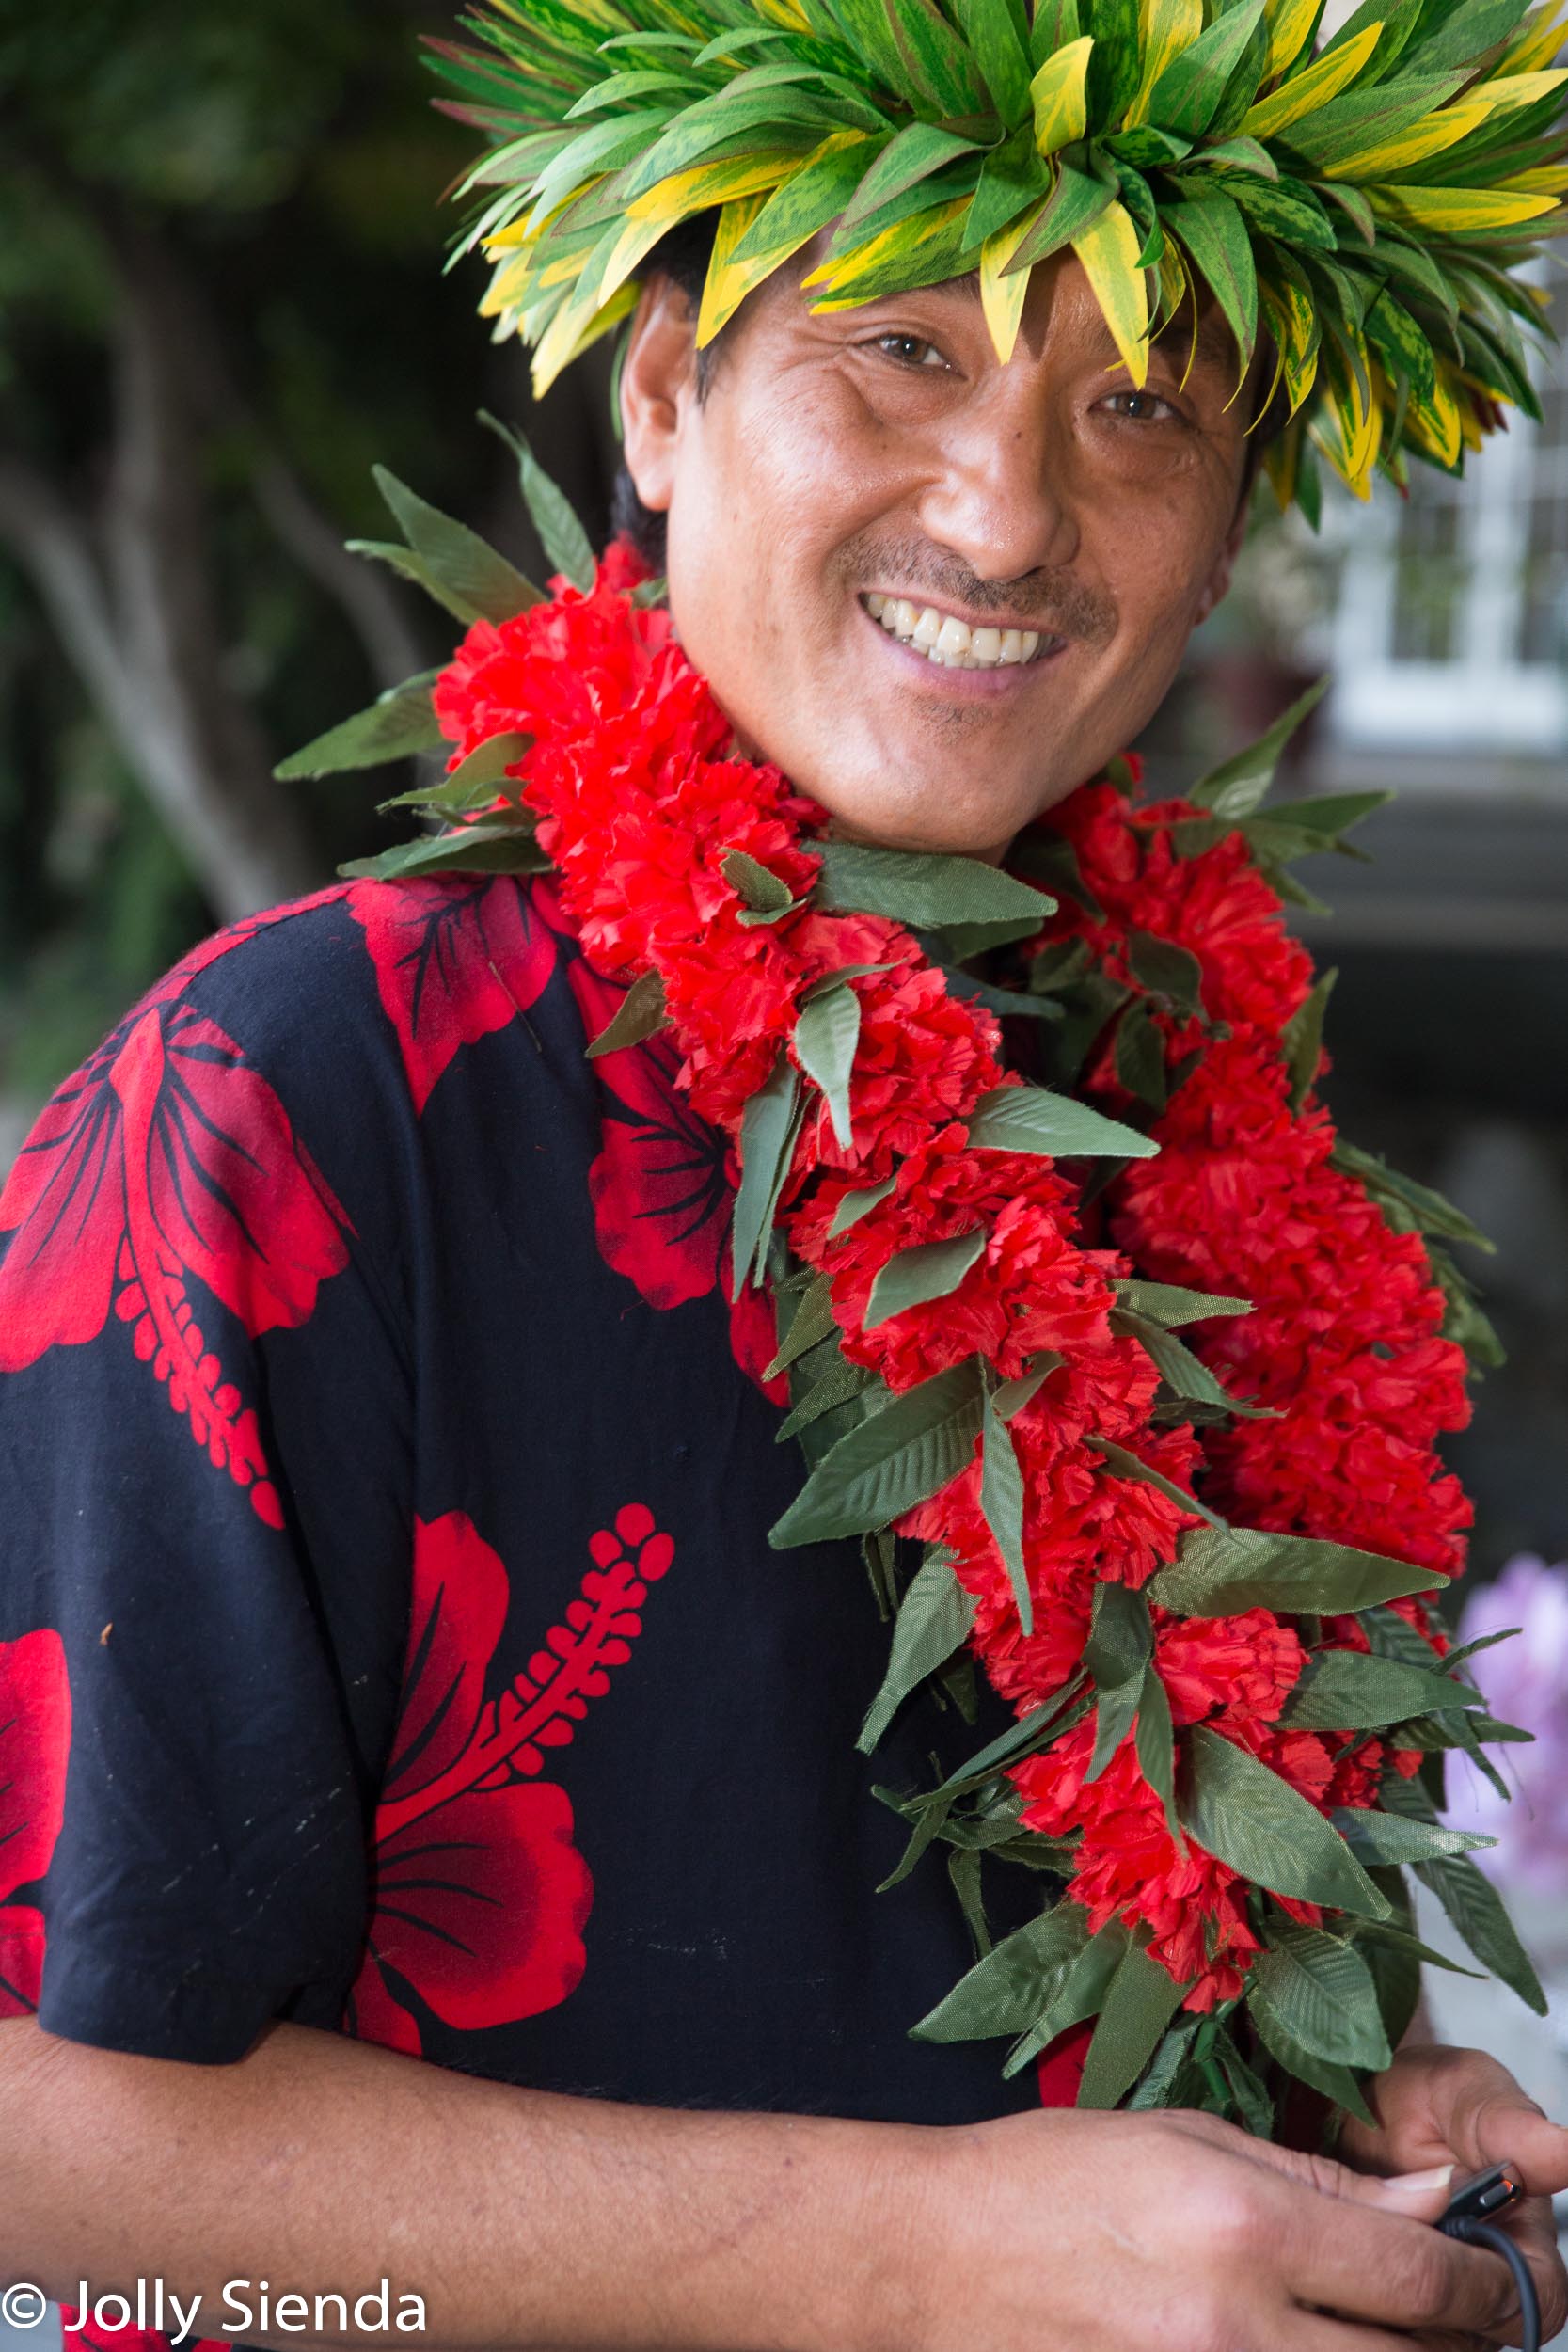 Hawaiian cheer portait of a man